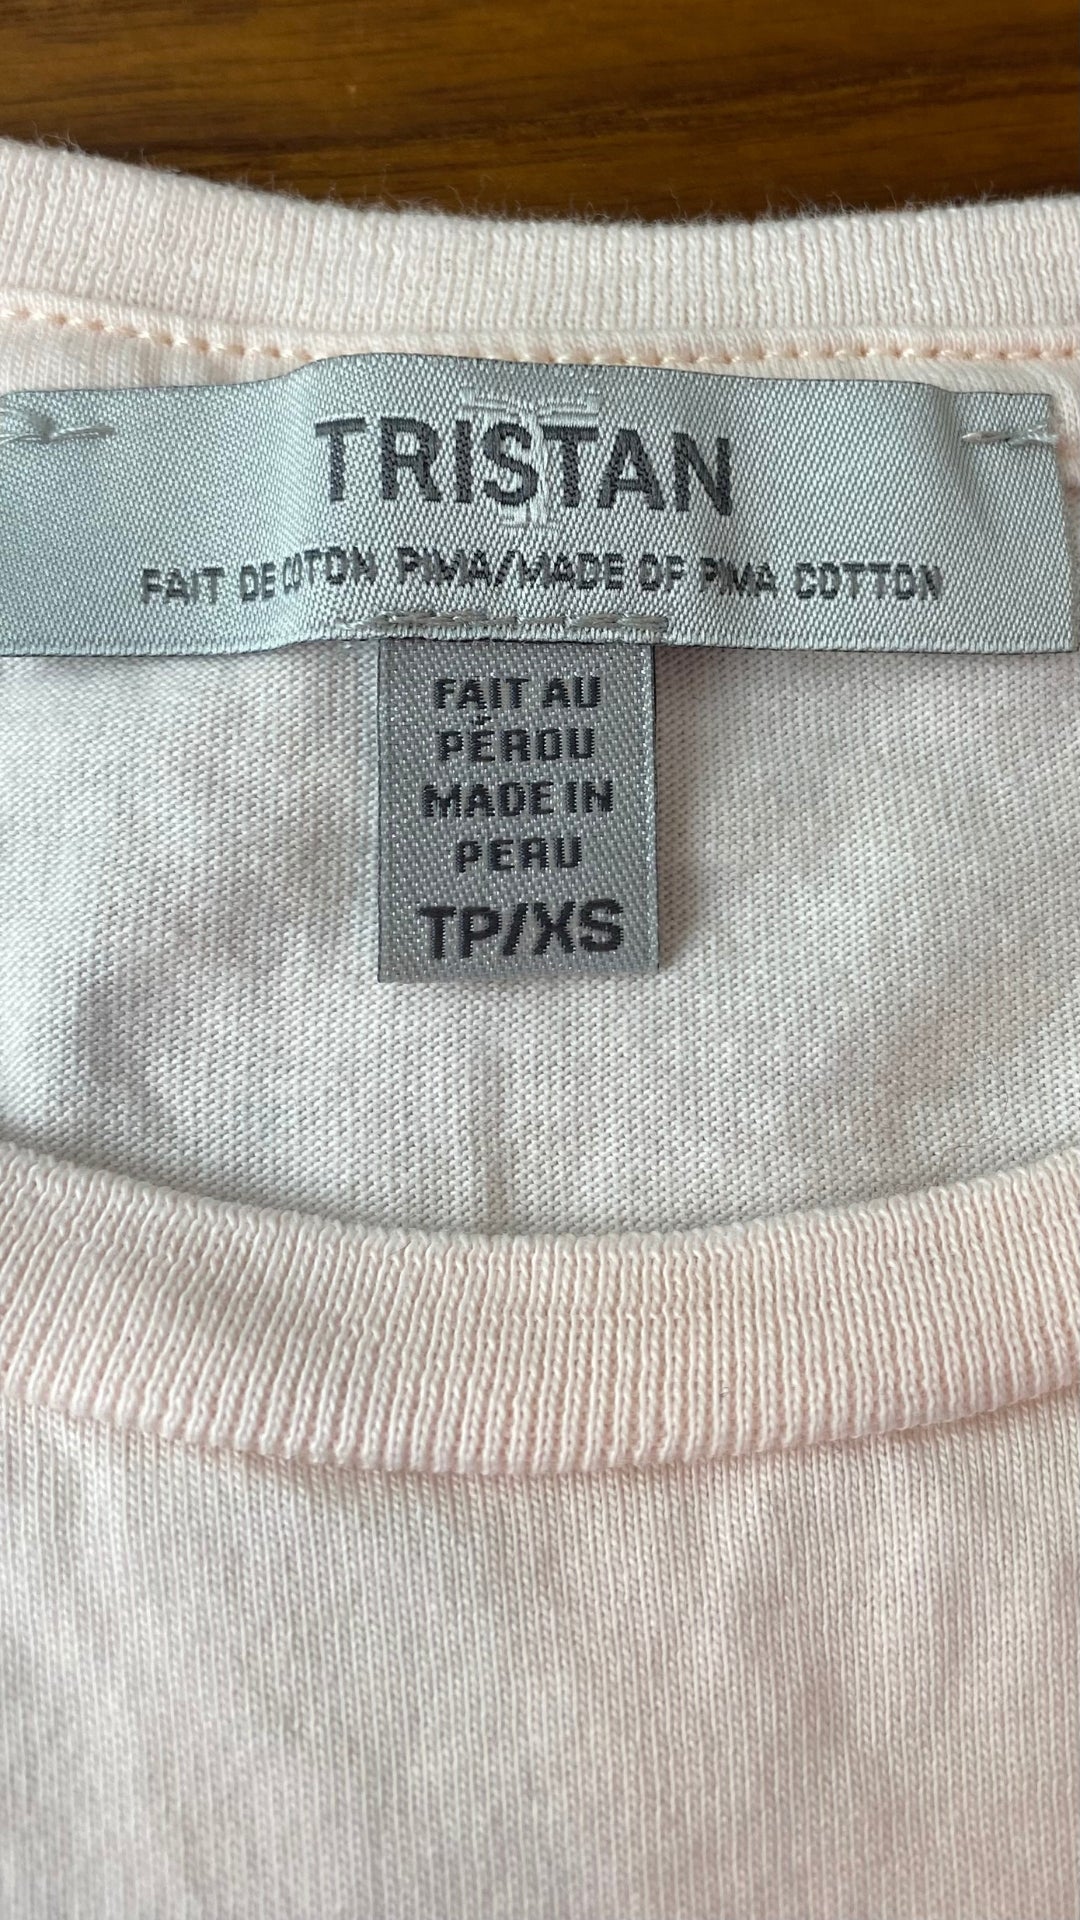 T-shirt rose doux en coton pima Tristan, taille xs. Vue de l'étiquette de marque et taille.